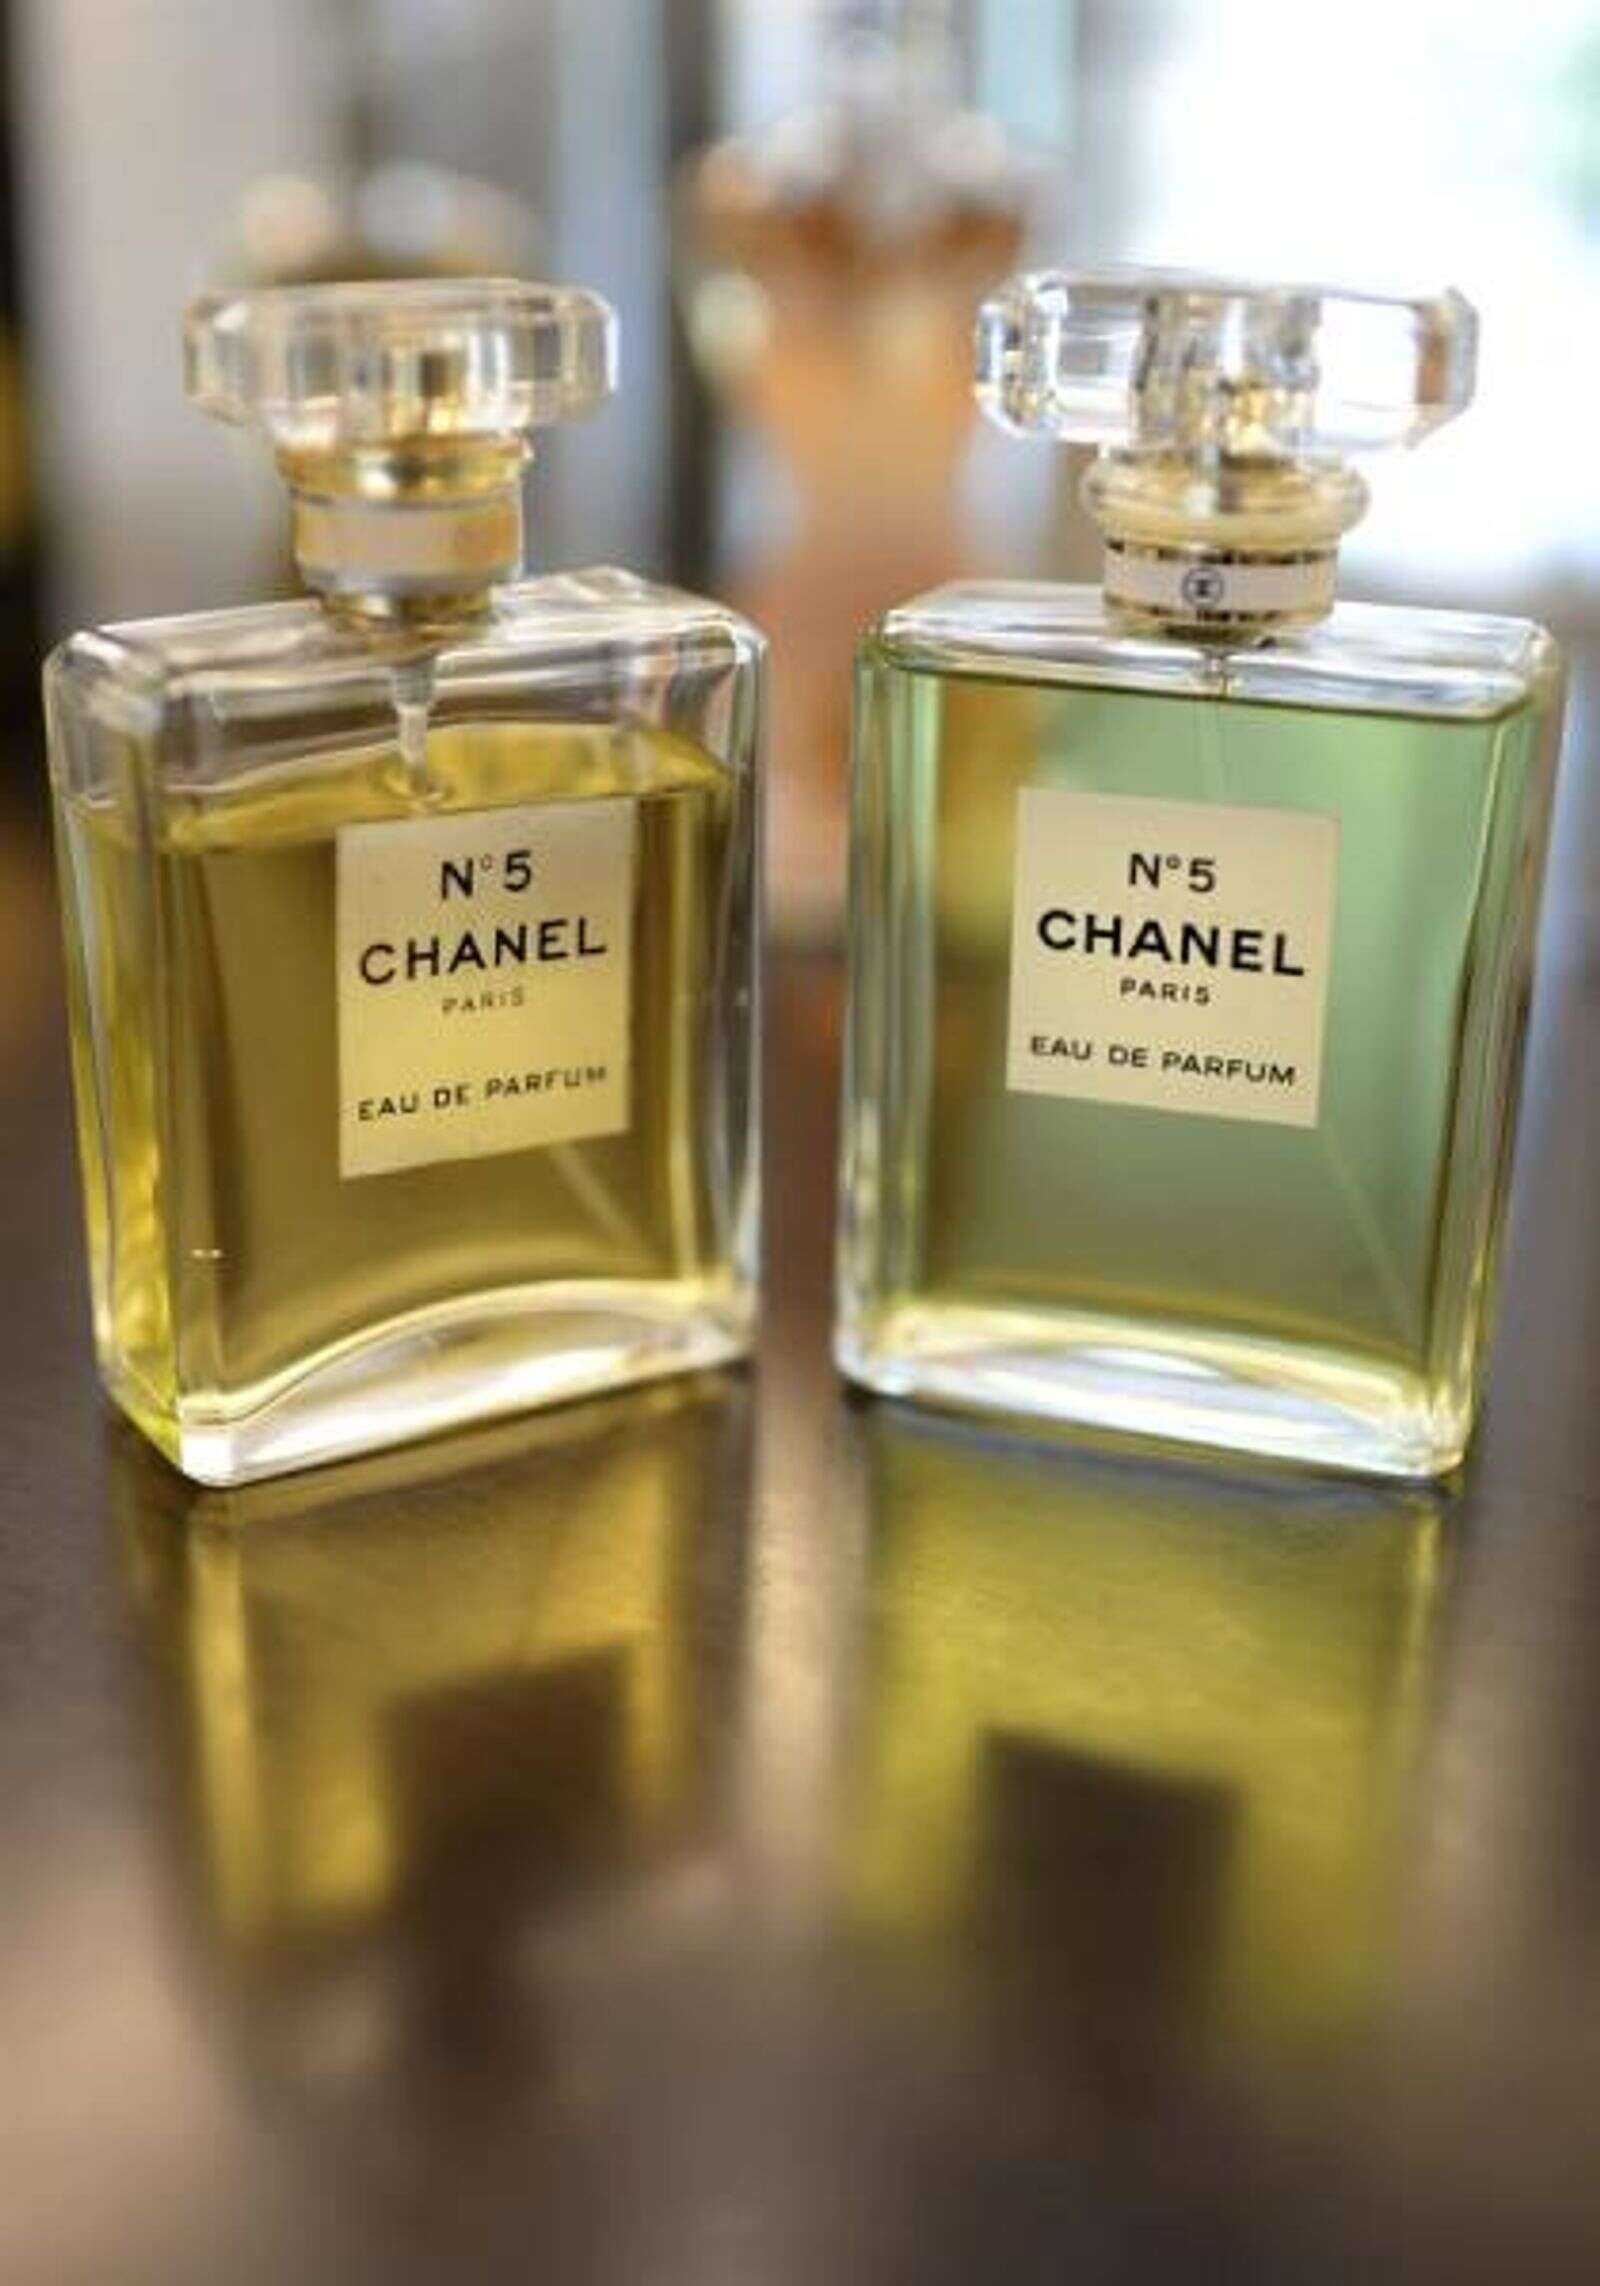 Chanel N° 5 cumple 100 años sin una gota rancia, TENDENCIAS